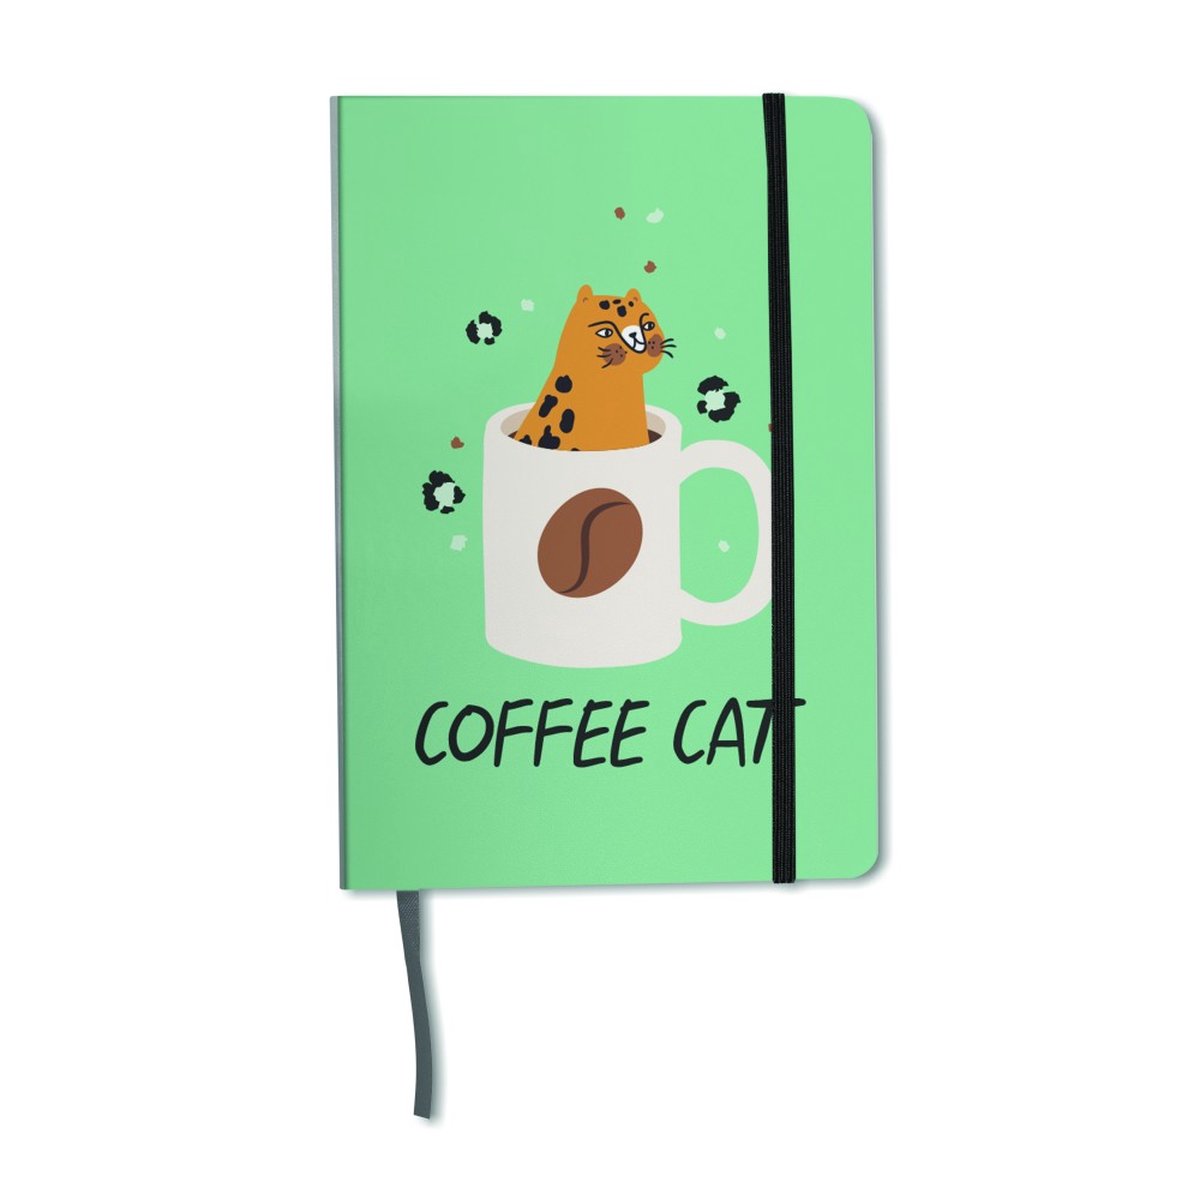 Coffee Cat Agenda